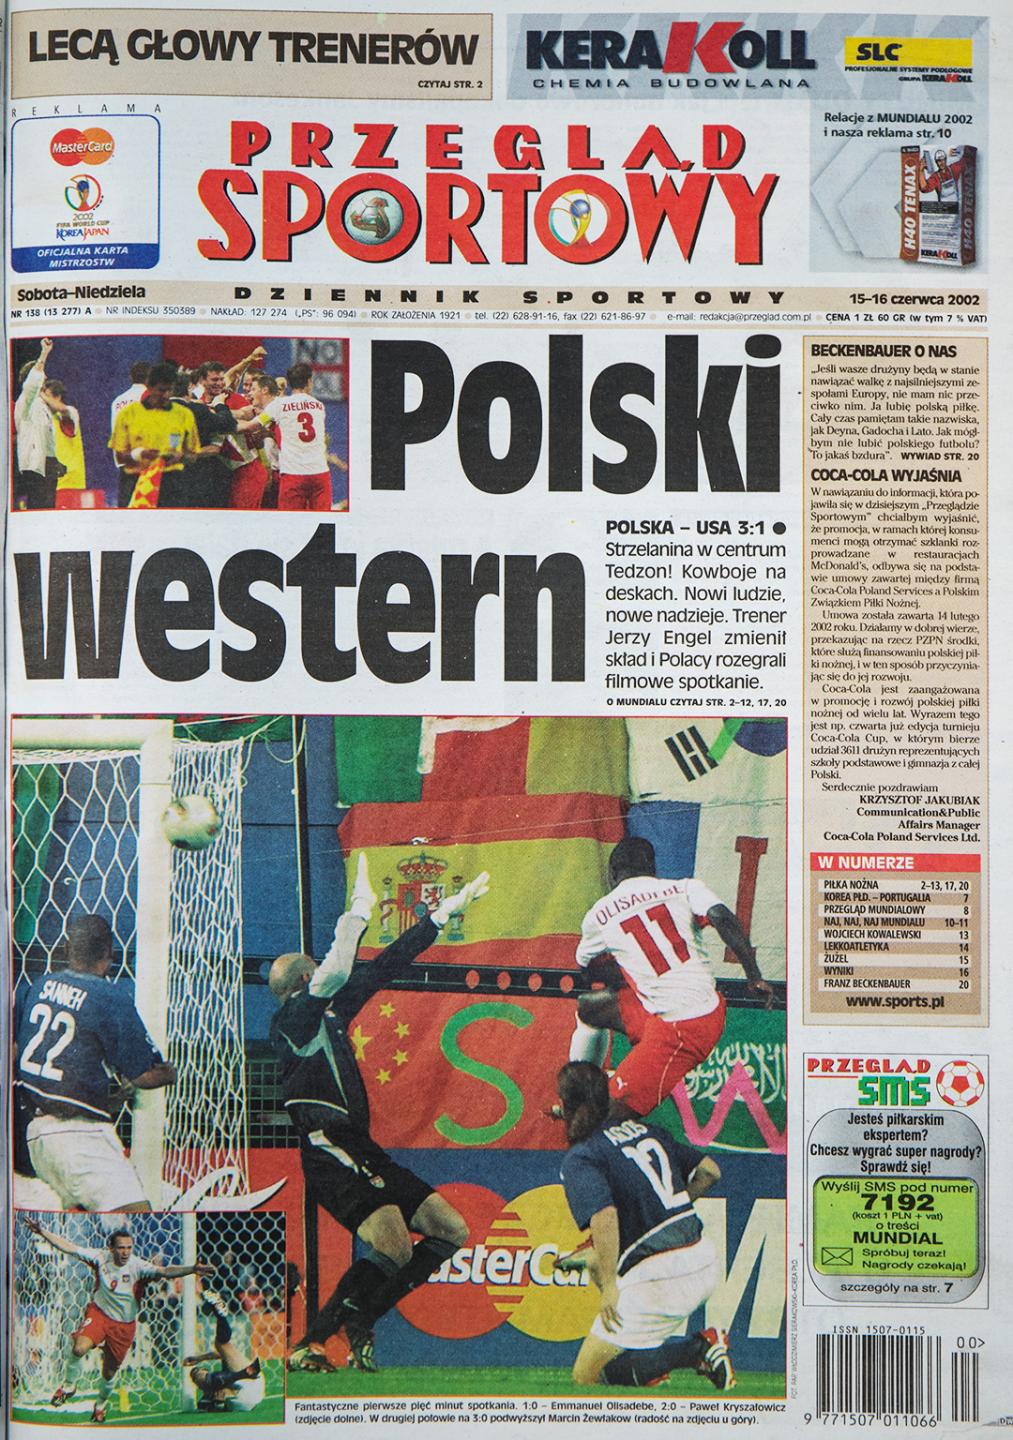 Okładka przeglądu sportowego po meczu Polska - USA (14.06.2002)